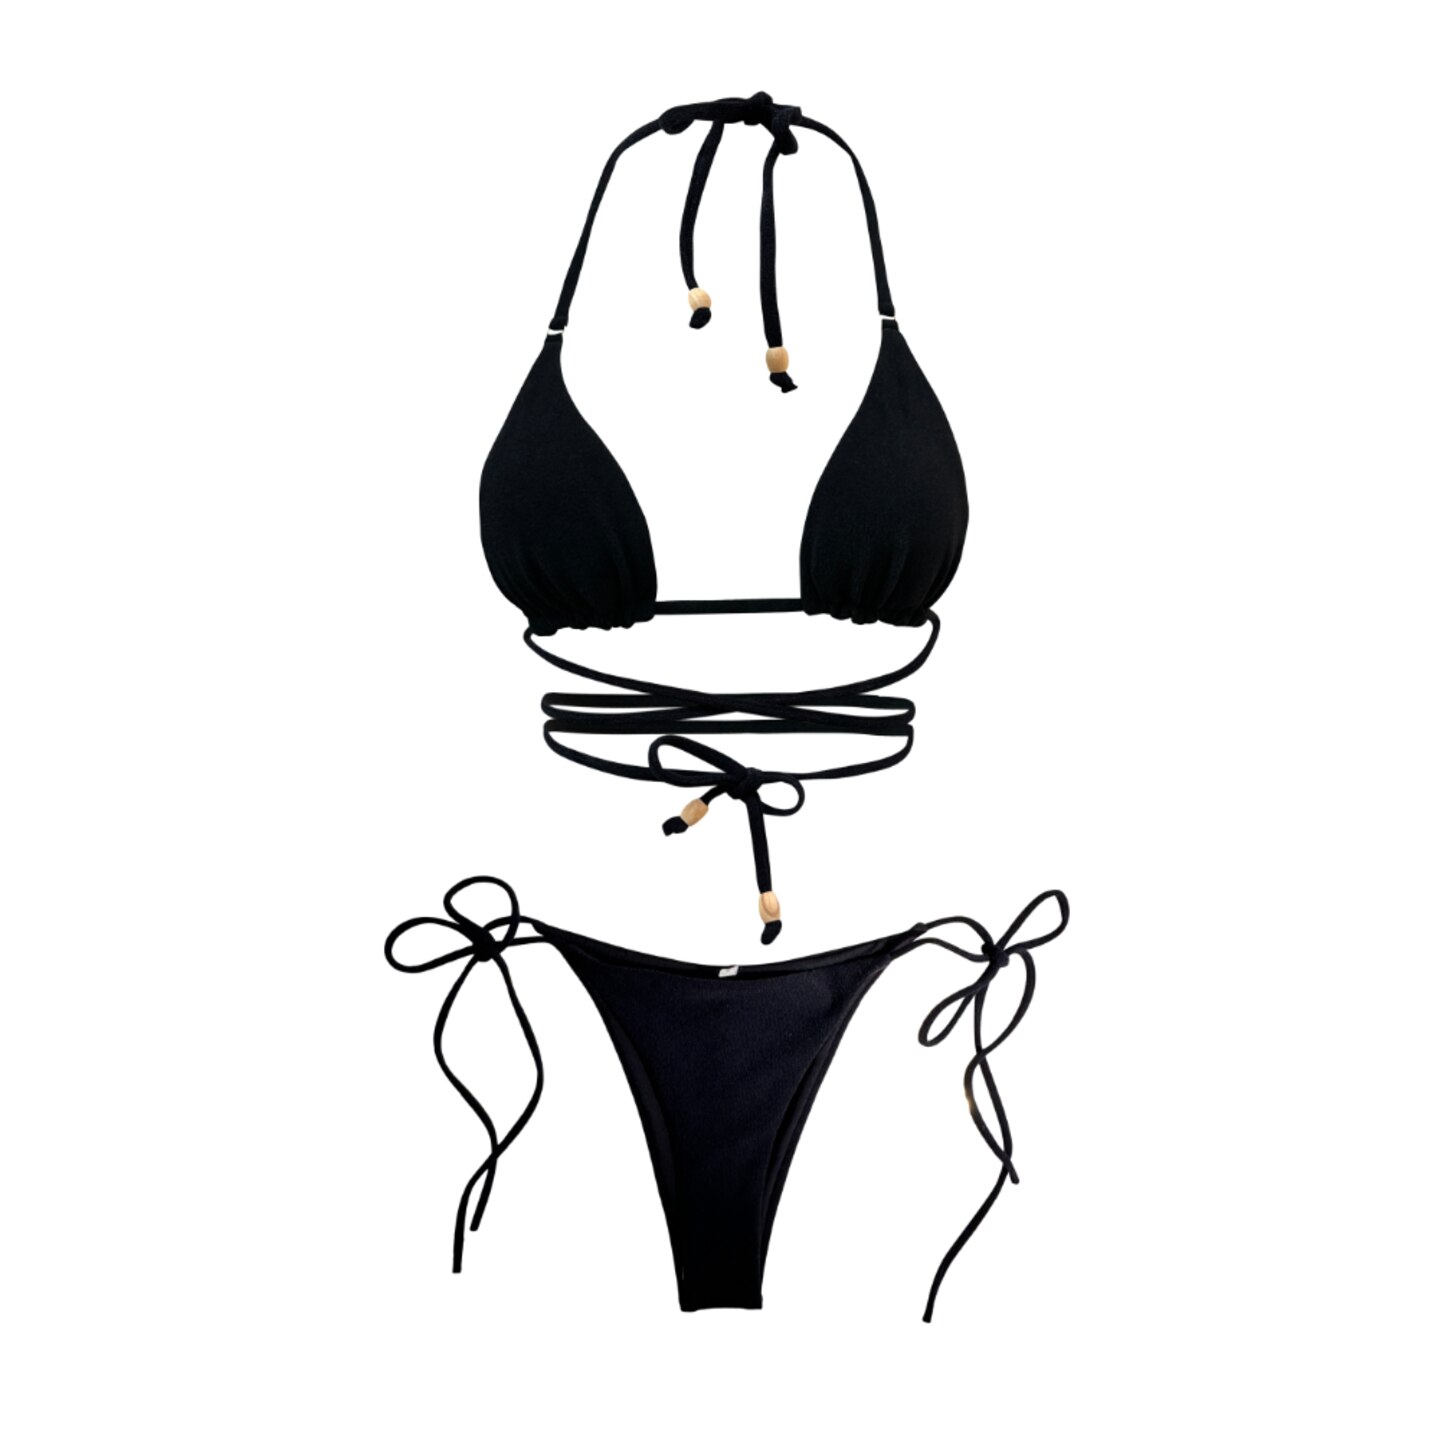 Dieser sexy Bikini von Narah Soleigh kostet ungefähr 140 Euro und zeichnet sich durch ein verspieltes und feminines Design aus. Außerdem hat es sich das Label zur Aufgabe gemacht auf nachhaltige Stoffe und Produktion zu setzen. Gut aussehen und damit auch noch Gutes tun – es kann so einfach sein!